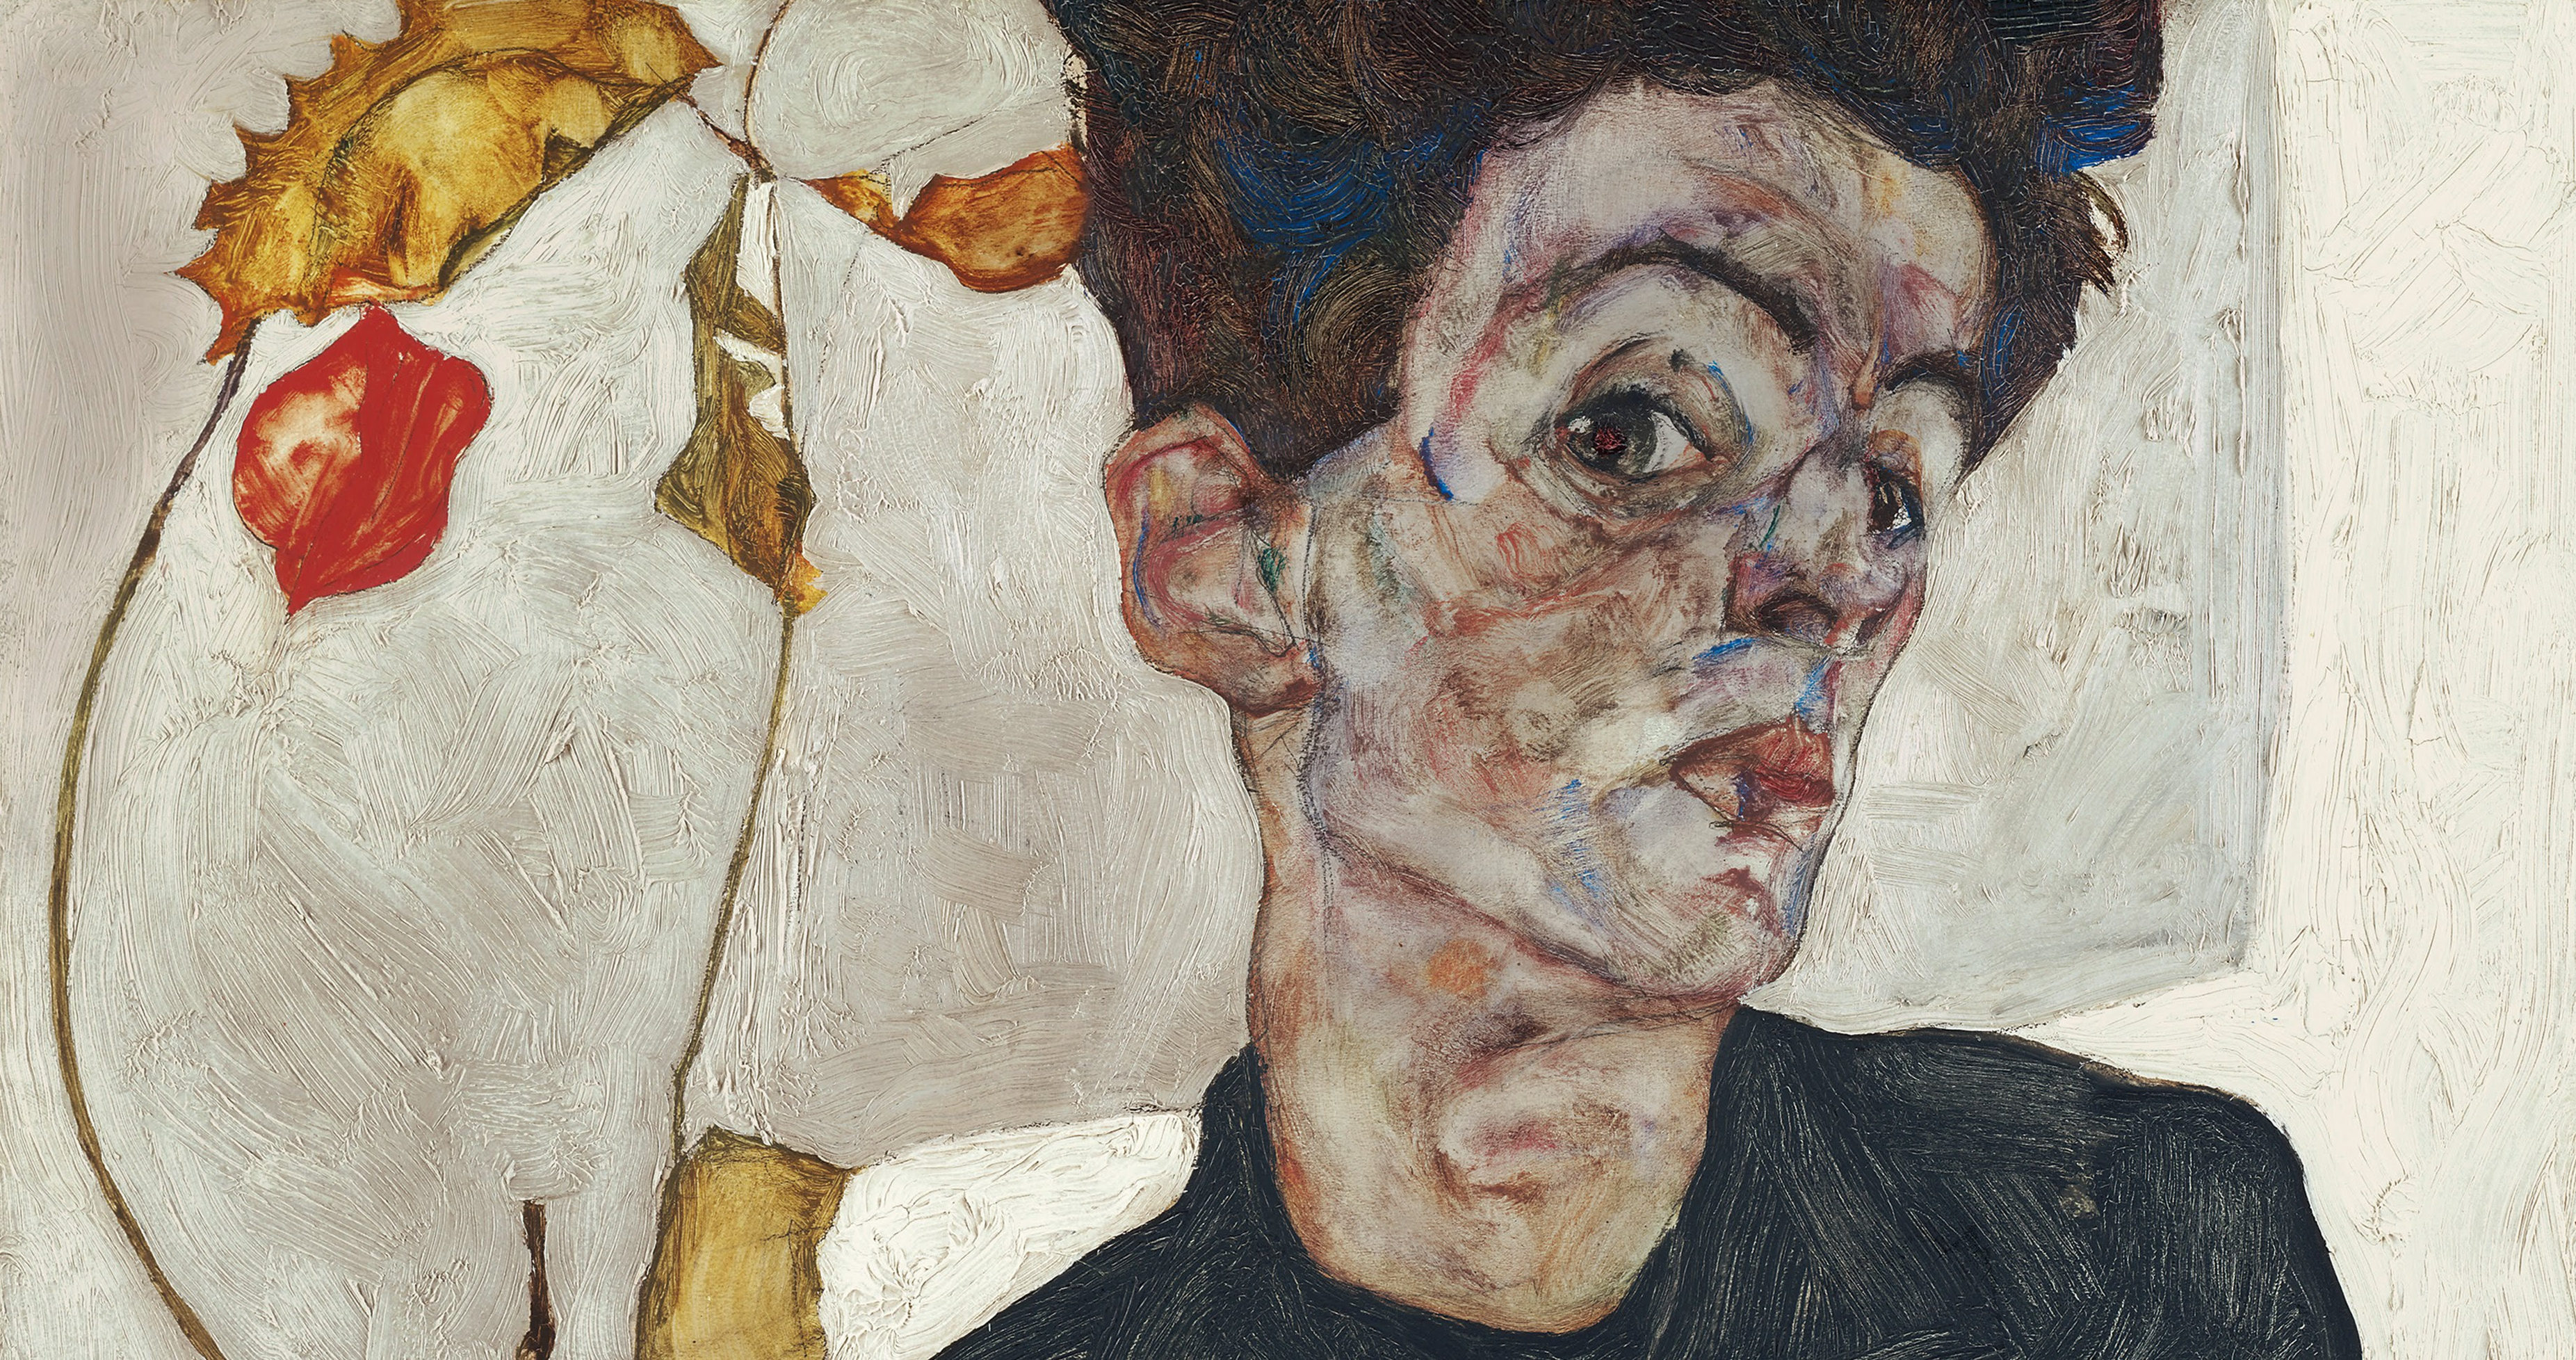 “Se ami sopra ogni cosa l’arte, devi saper abbandonare anche il migliore amico”: su Egon Schiele, l’artista che non lascia scampo